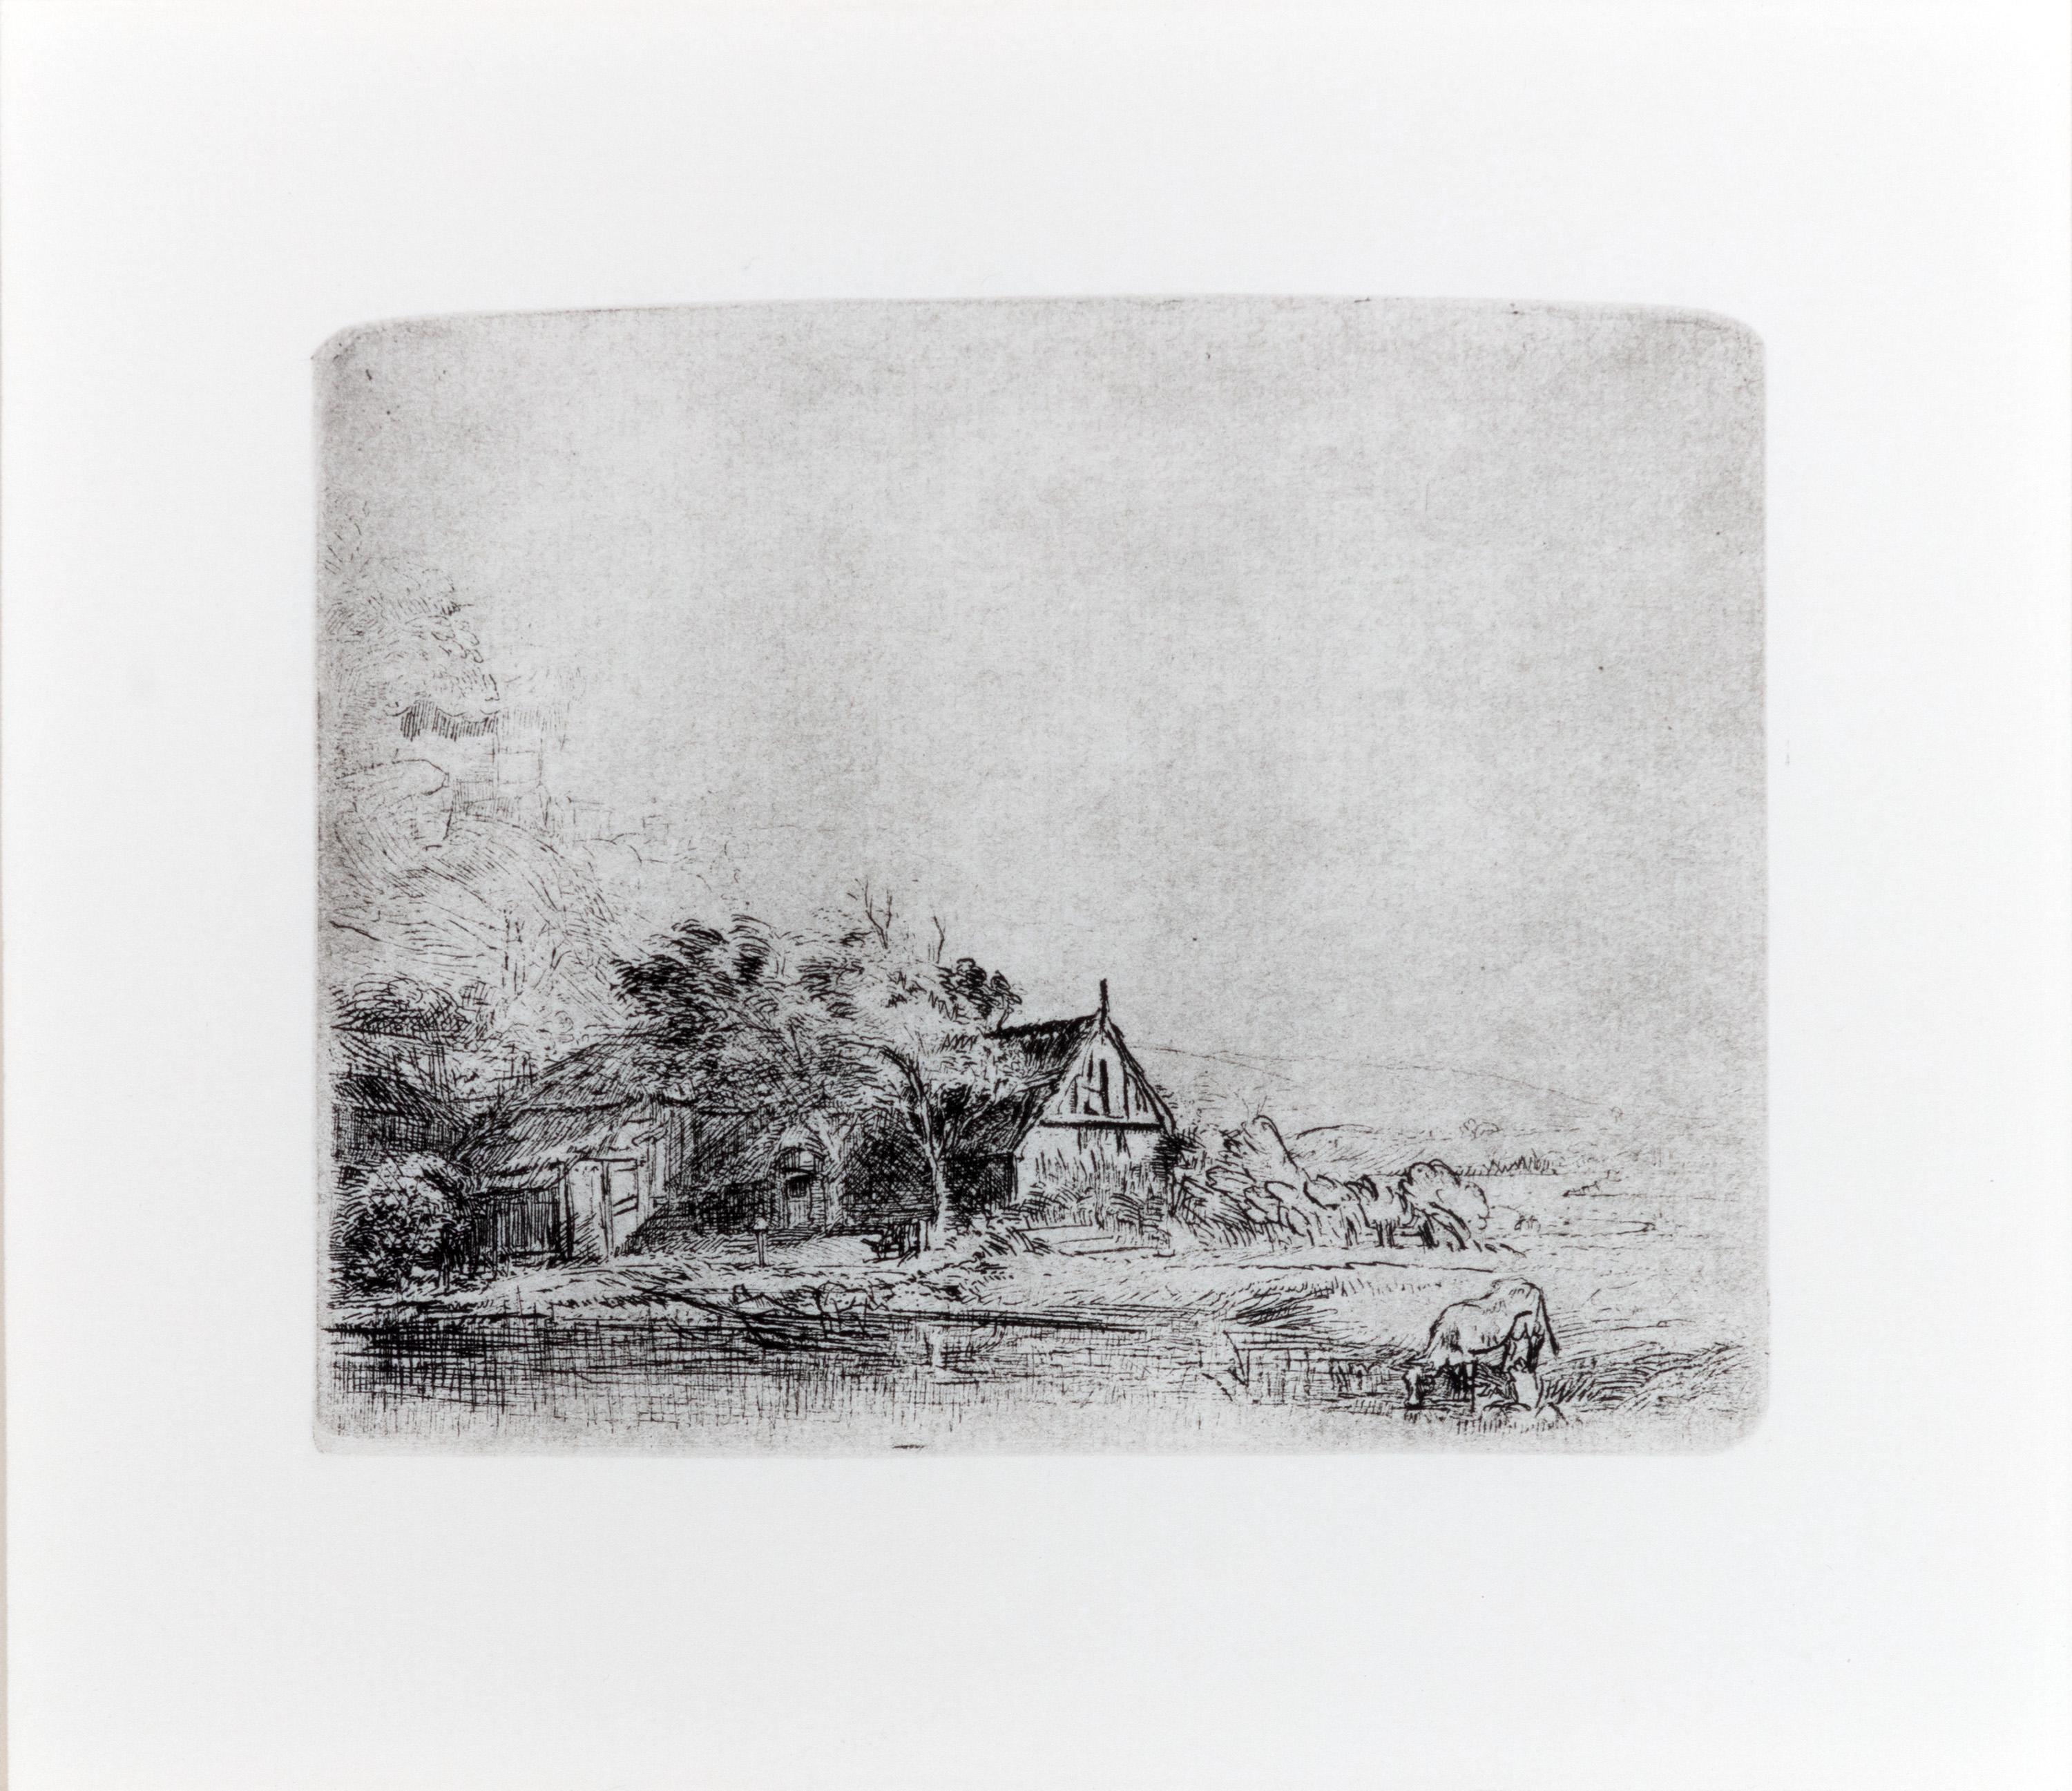 Landschaft mit einer Kuh – Print von Rembrandt van Rijn